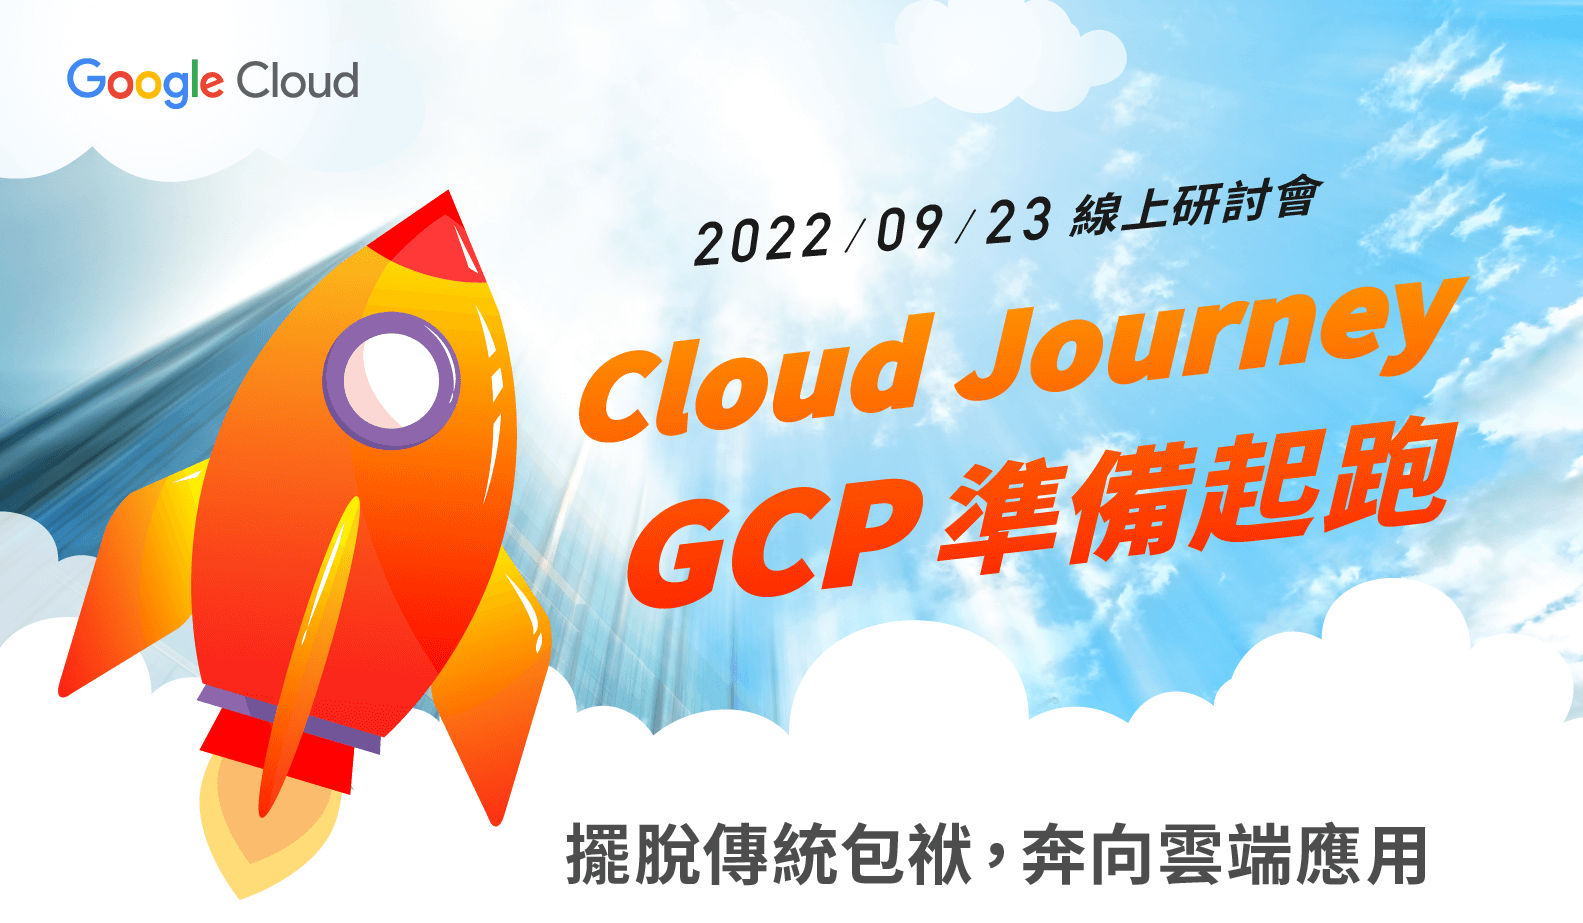 活動限定送IT資源免費檢測 | Google Cloud | Cloud Journey - GCP準備起跑 | 線上研討會 | 2022/09/23 (五) 14:00